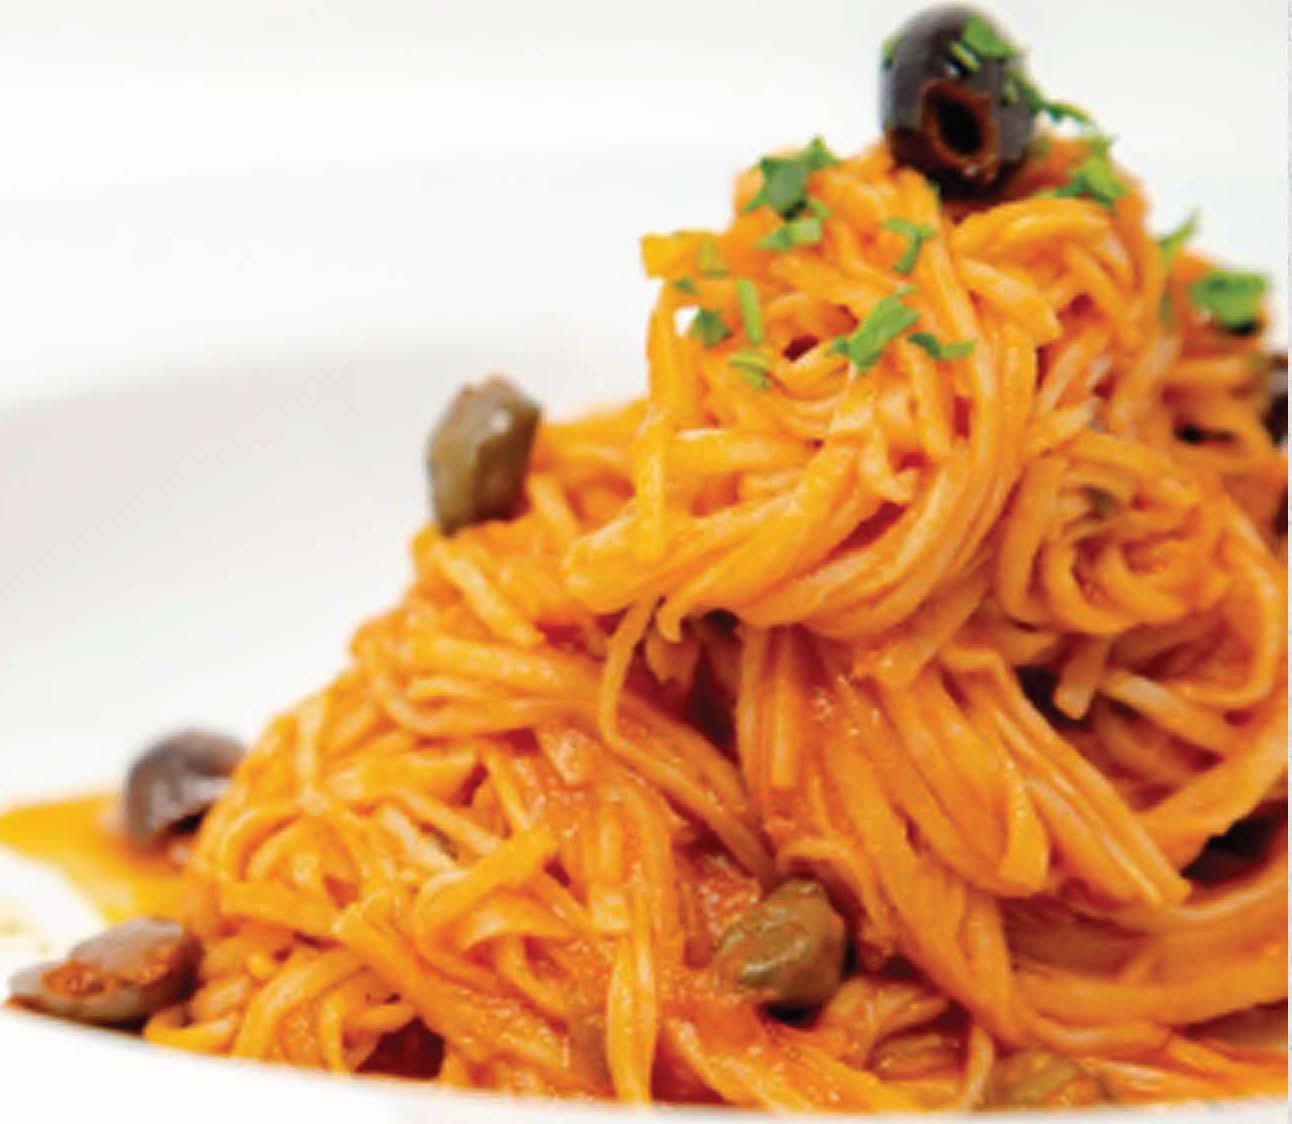 Natural Heaven Vegan Spaghetti Puttanesca - By Chef Nicola